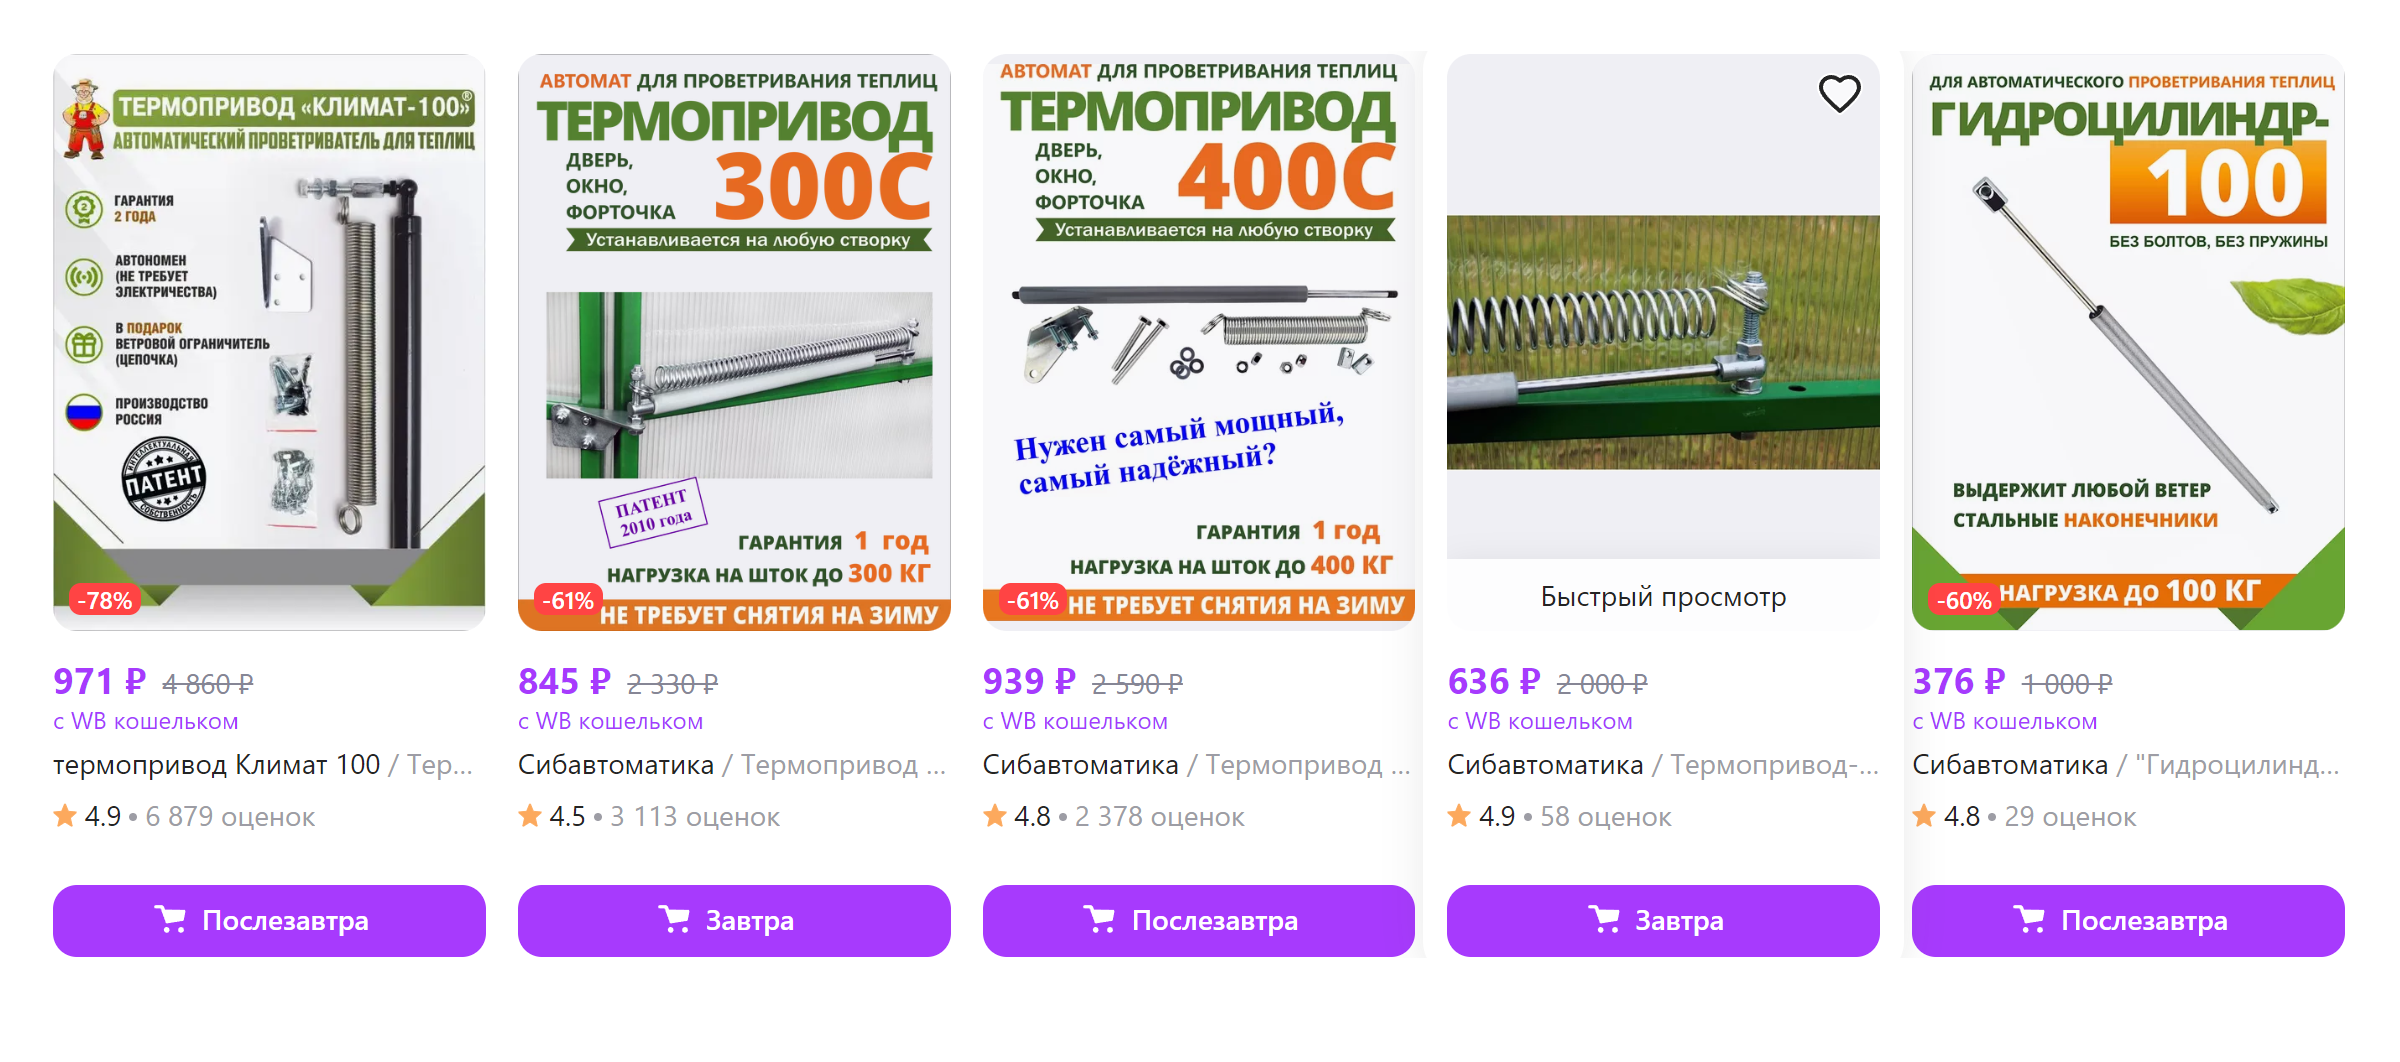 Обычные устройства для автопроветривания теплиц стоят от 600 ₽. Источник: wildberries.ru